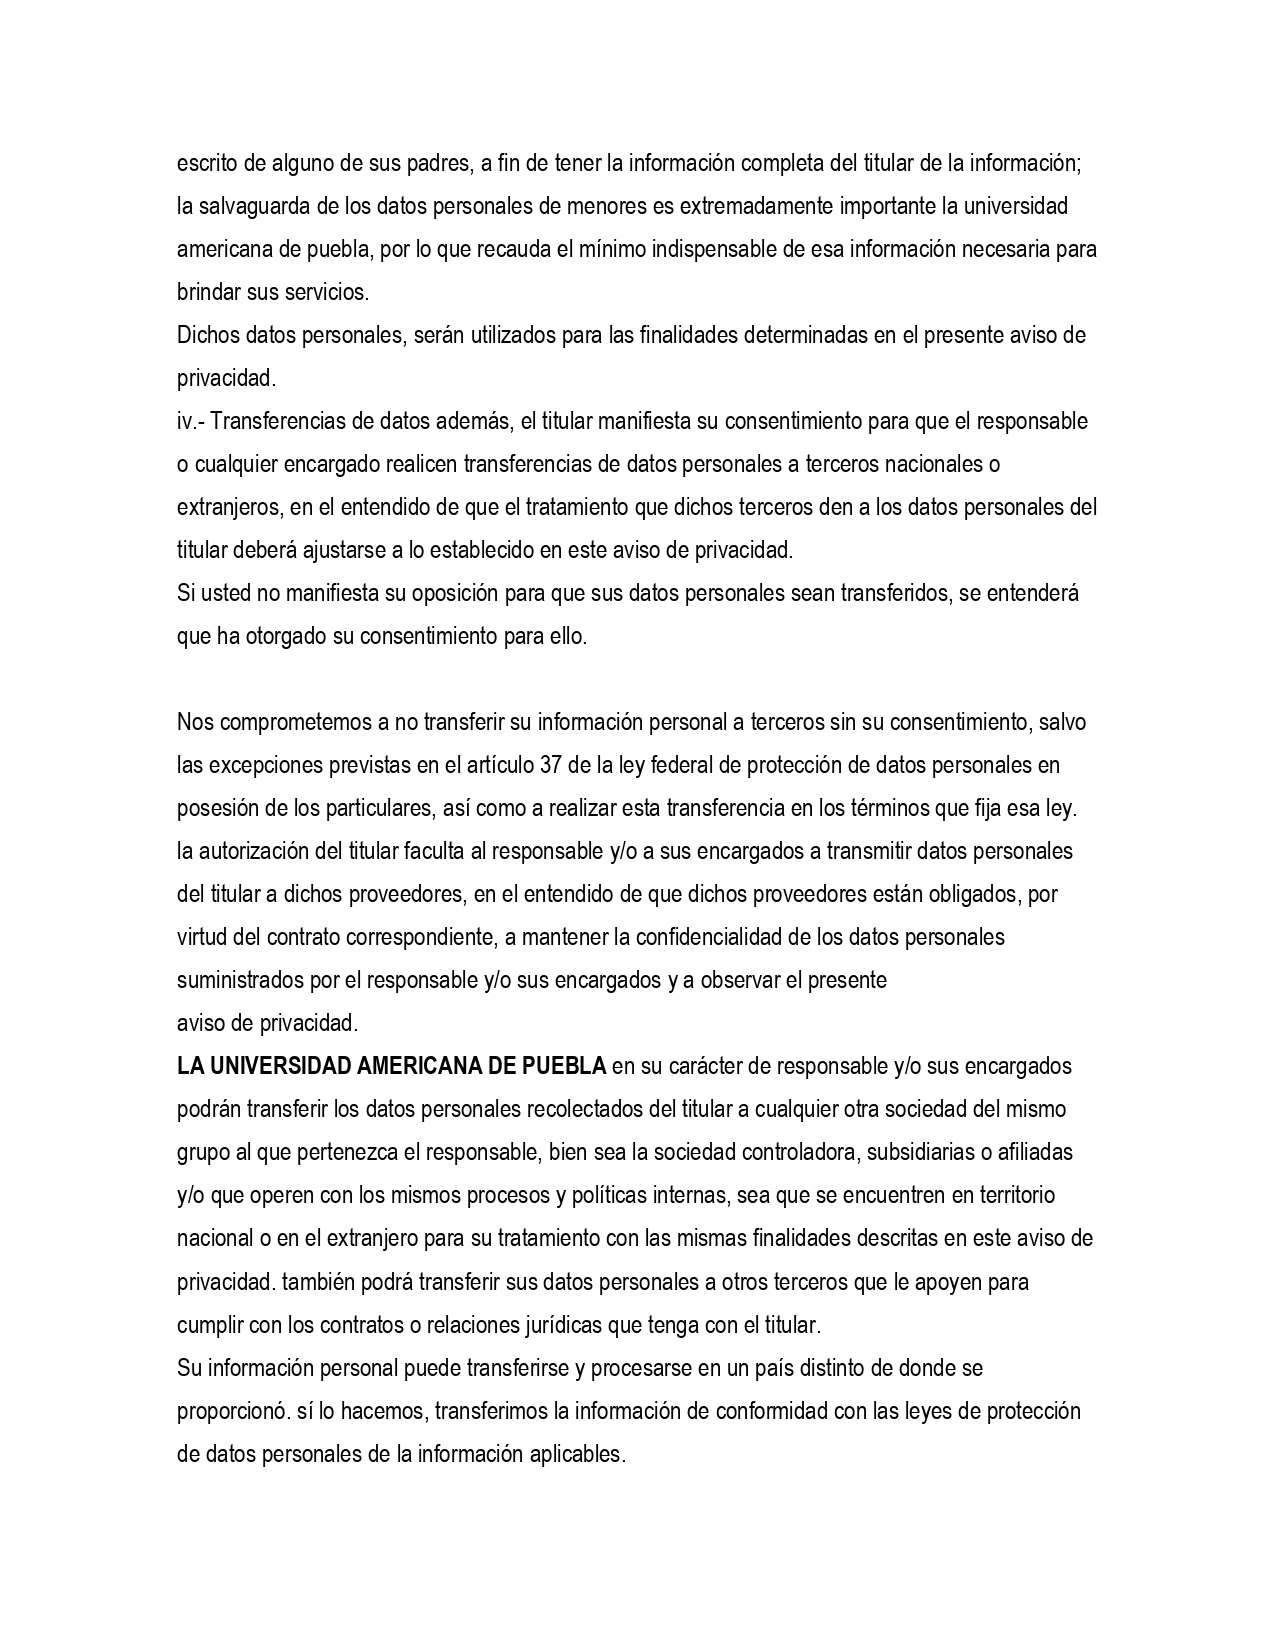 POLITICA DE PRIVACIDAD UAMP_page-0006